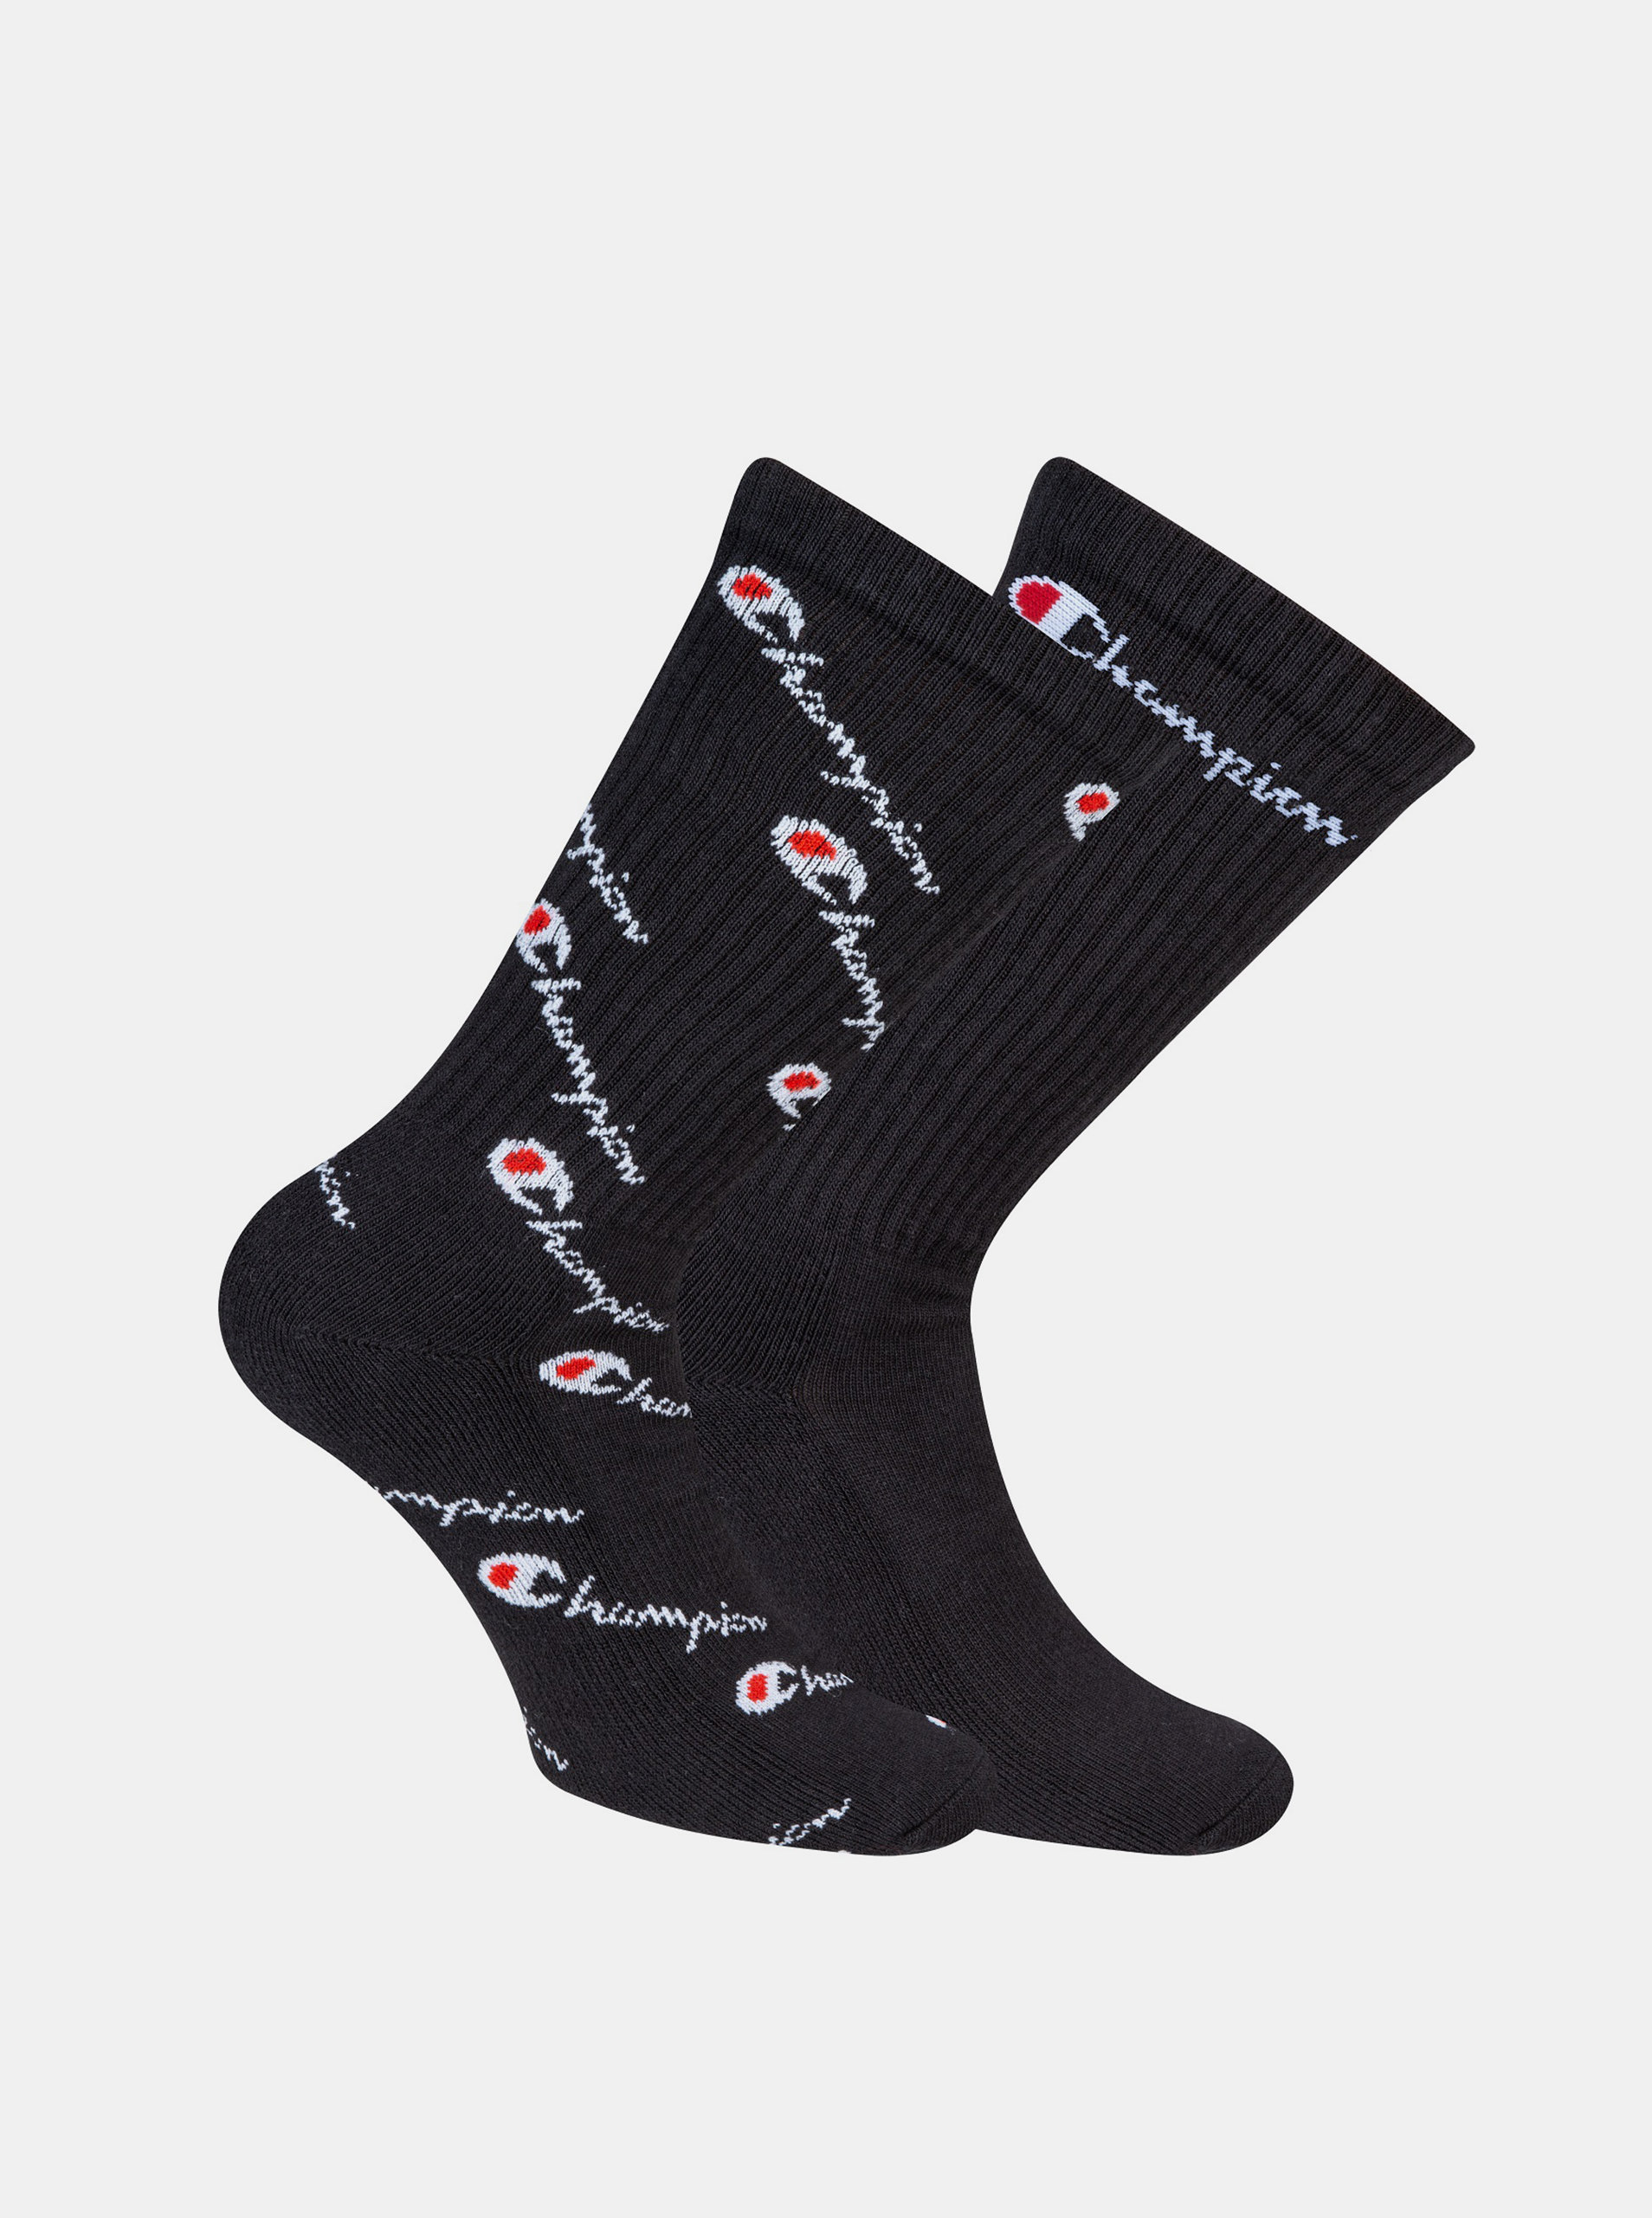 Fotografie CHAMPION CREW FASHION MIX SOCKS 2x - Sportovní ponožky 2 páry - černá